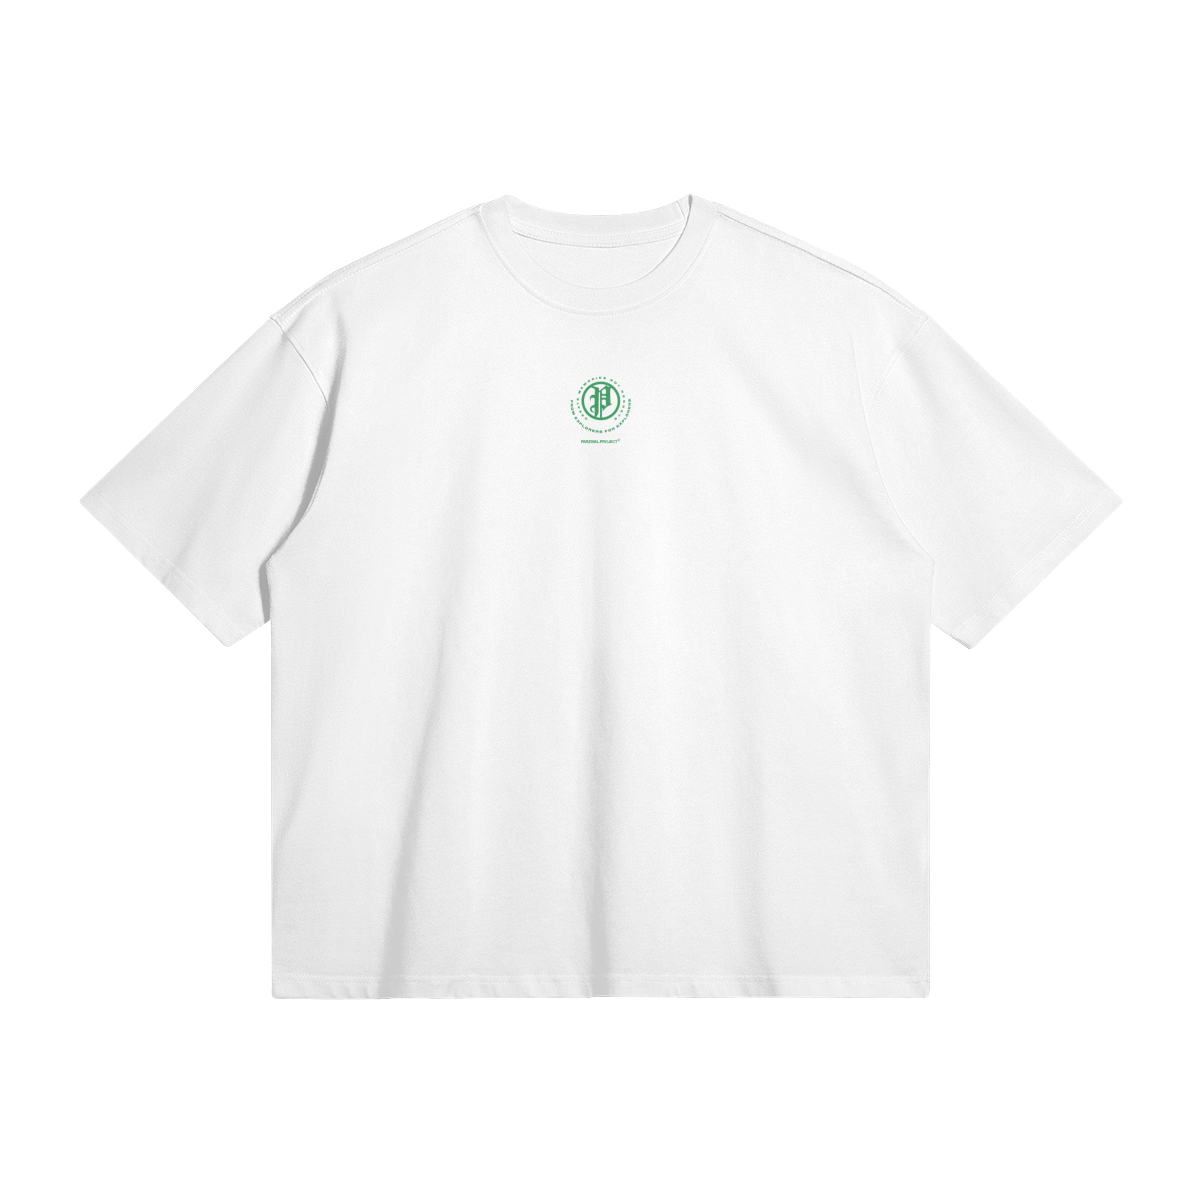 explorer shirt - green logo